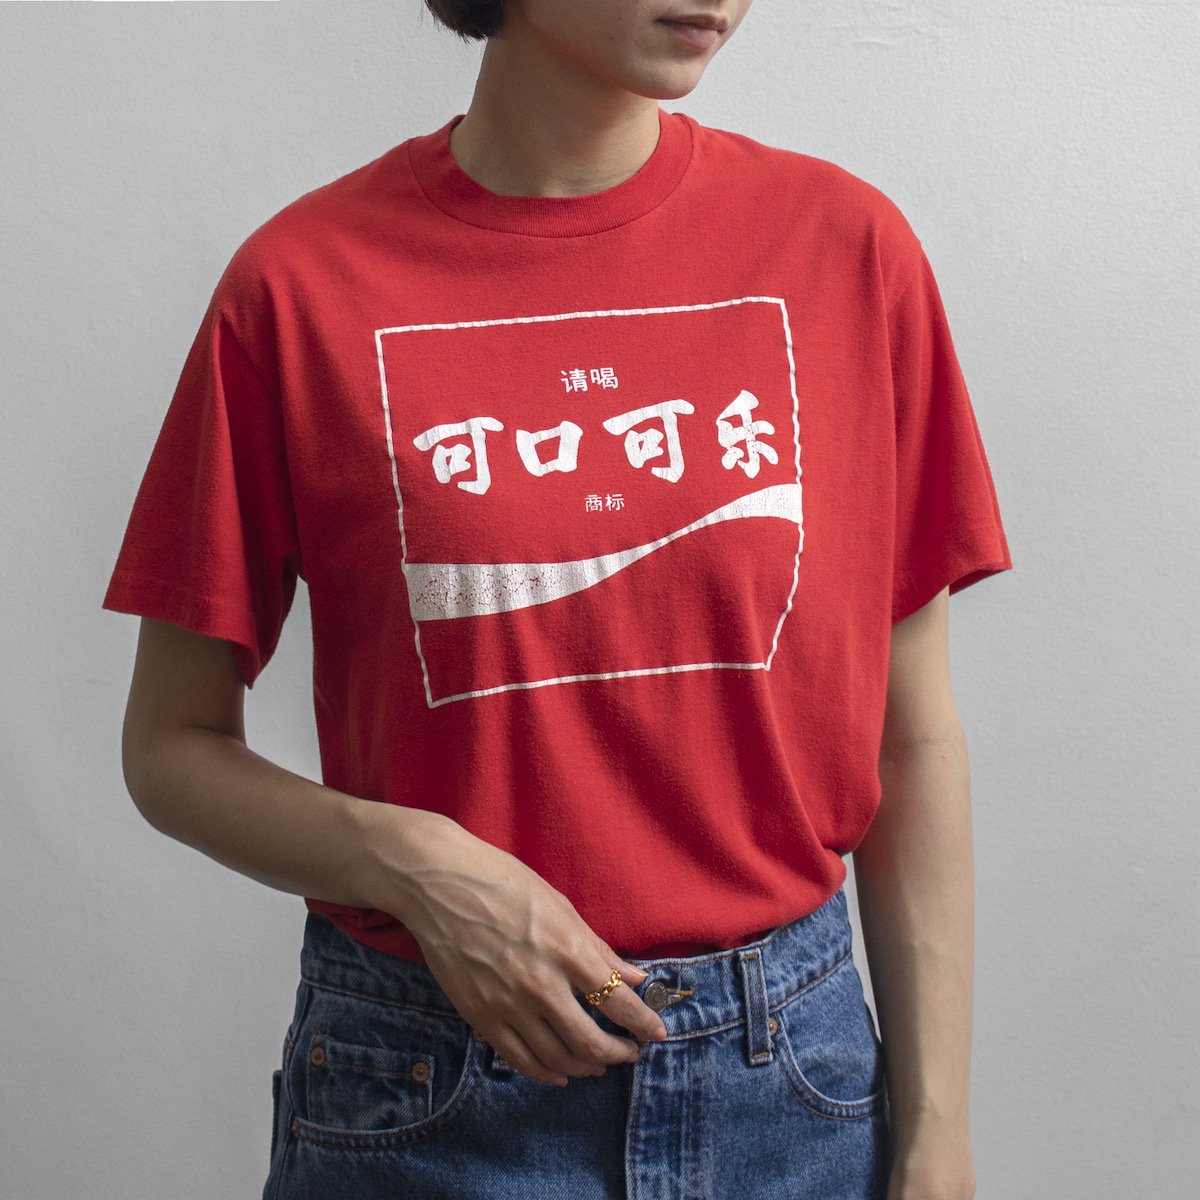 レディース 1970s ヴィンテージ コカコーラ 中国語ロゴ プリントtシャツ レッド